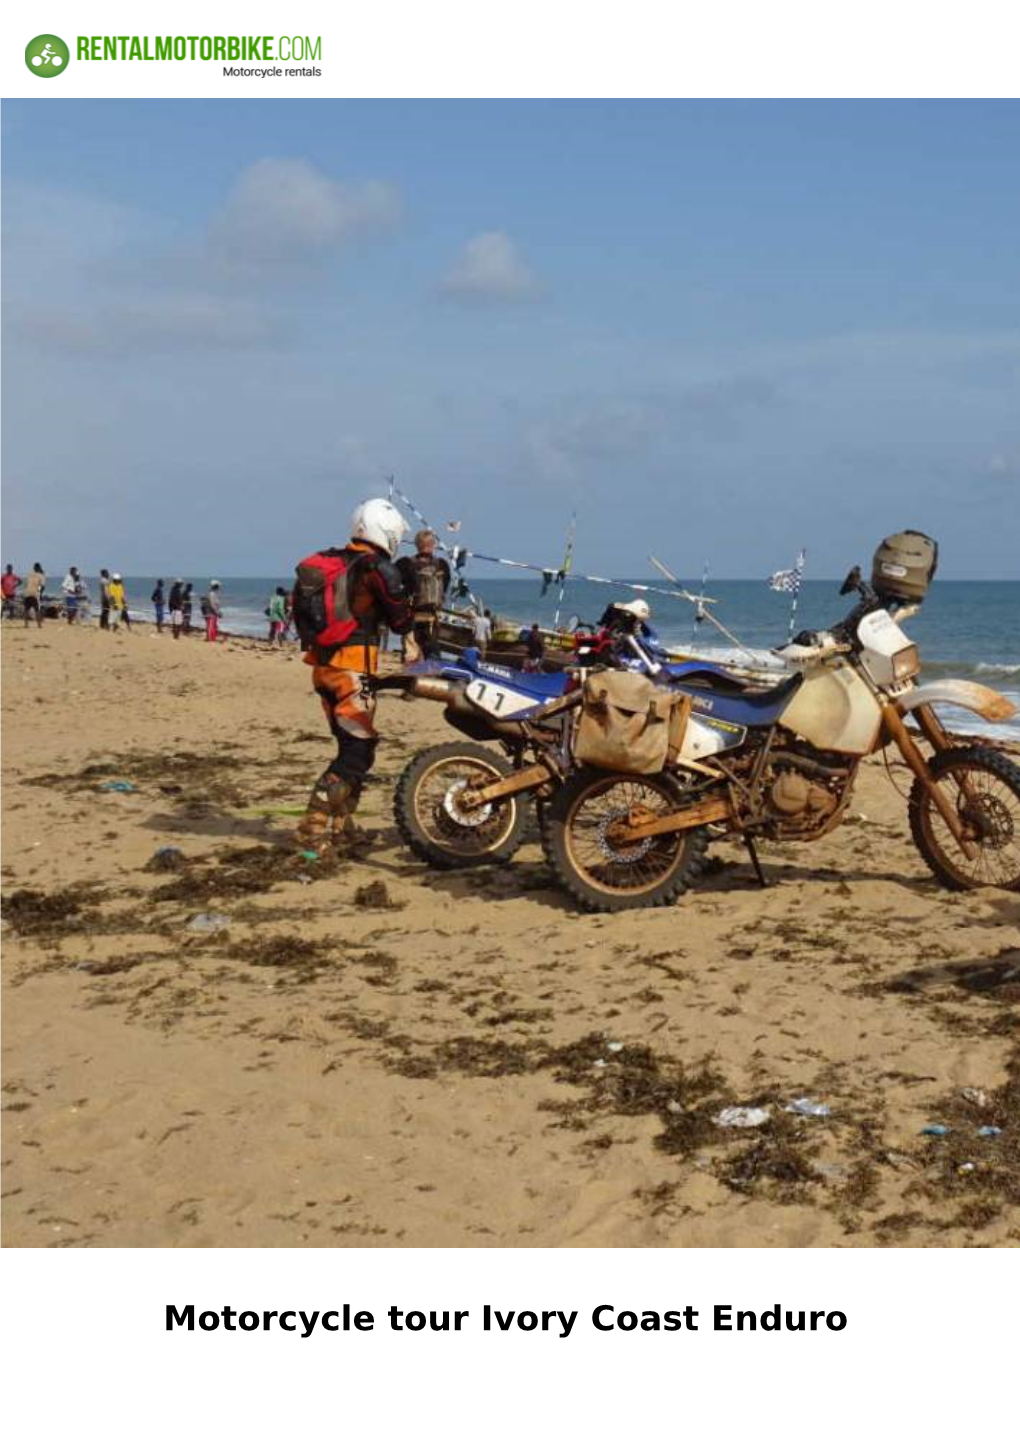 Motorcycle Tour Ivory Coast Enduro Motorcycle Tour Ivory Coast Enduro